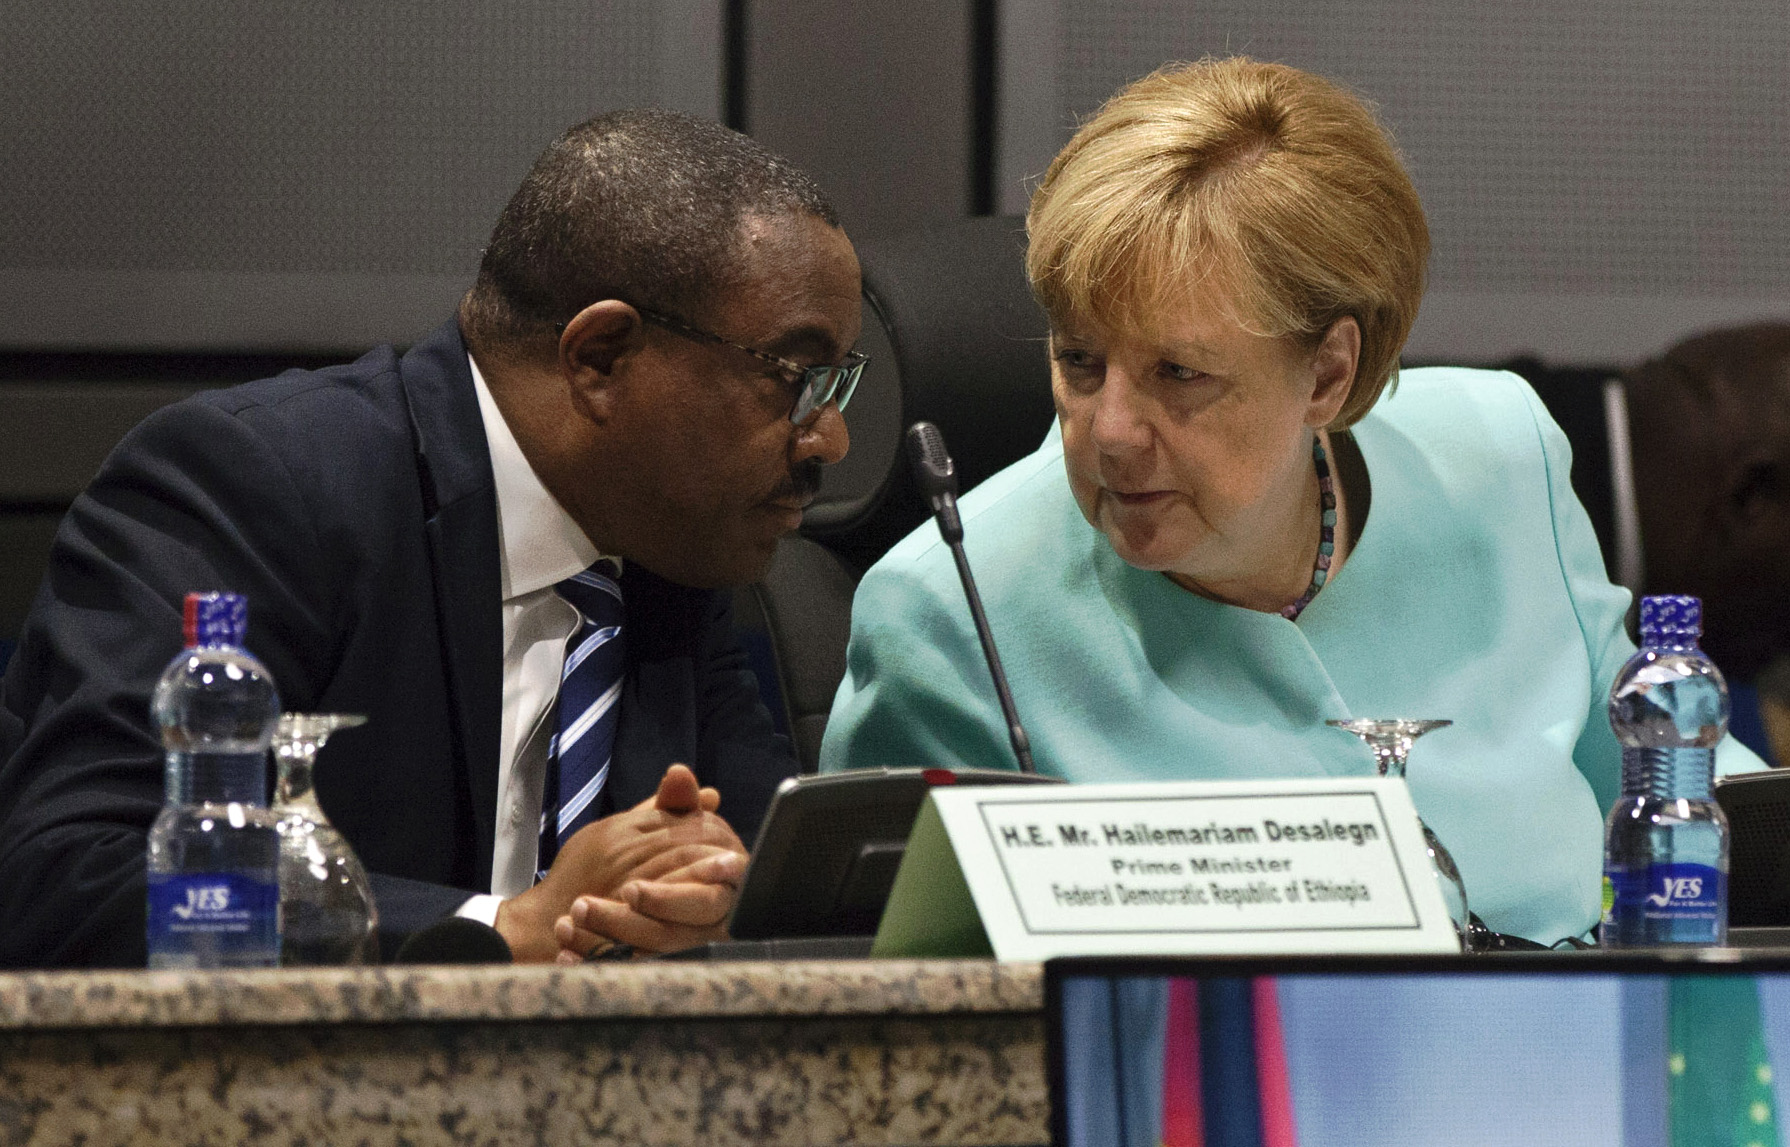 Merkel in Äthiopien: Aufruf zur Zusammenarbeit gegen Terror, Flucht und Vertreibung auf